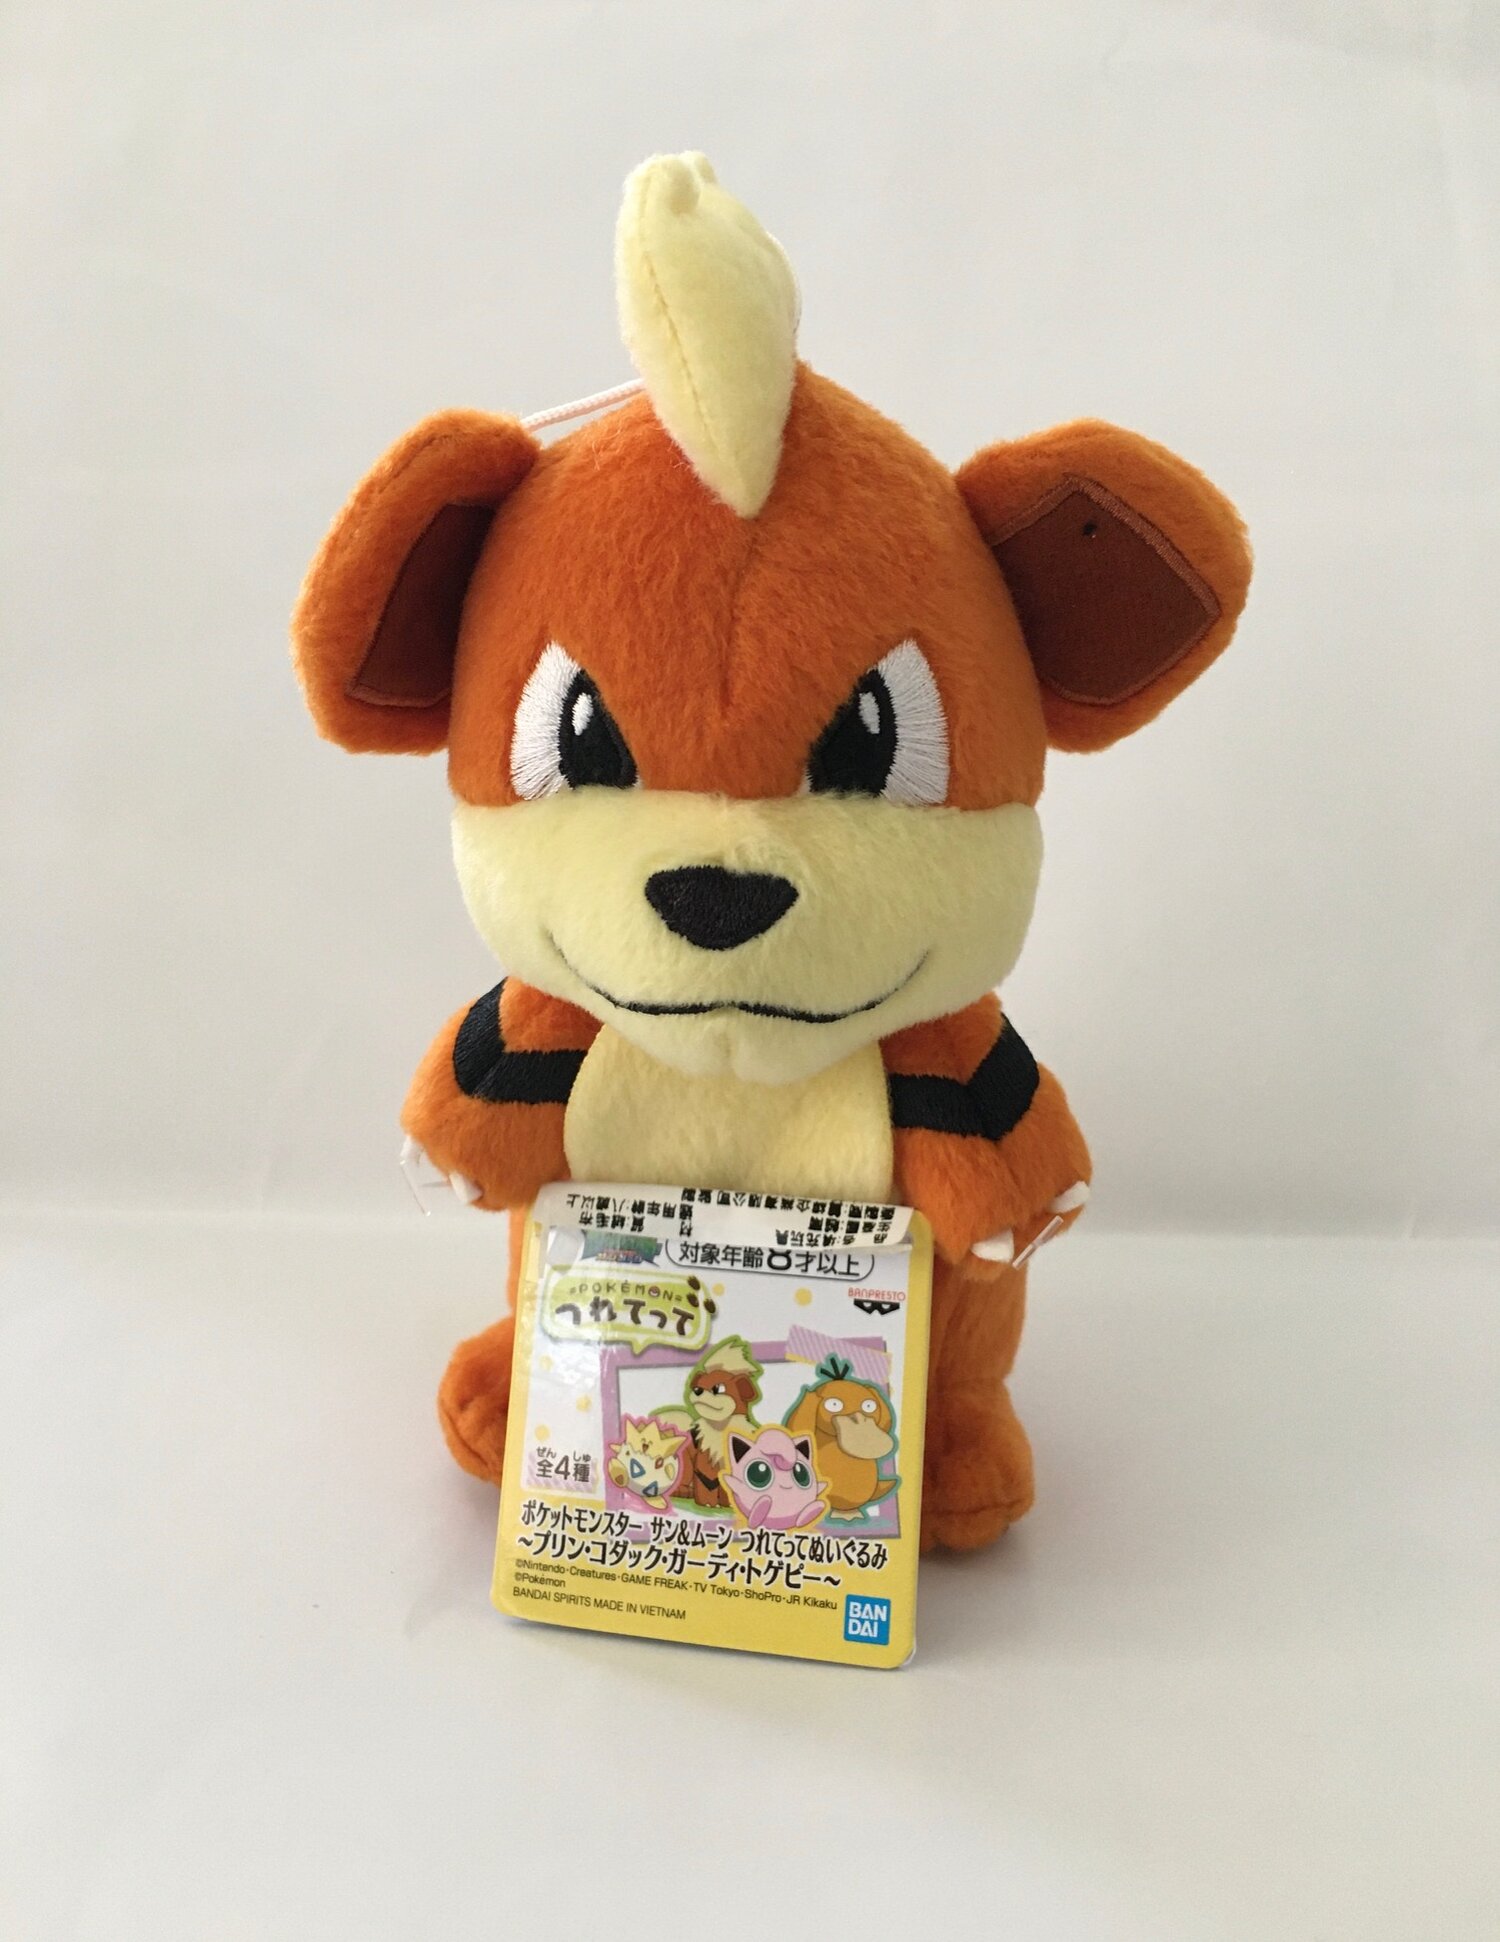 8 Q Pokemon Growlithe Plush By Banpresto Prize Japan Anime Palace